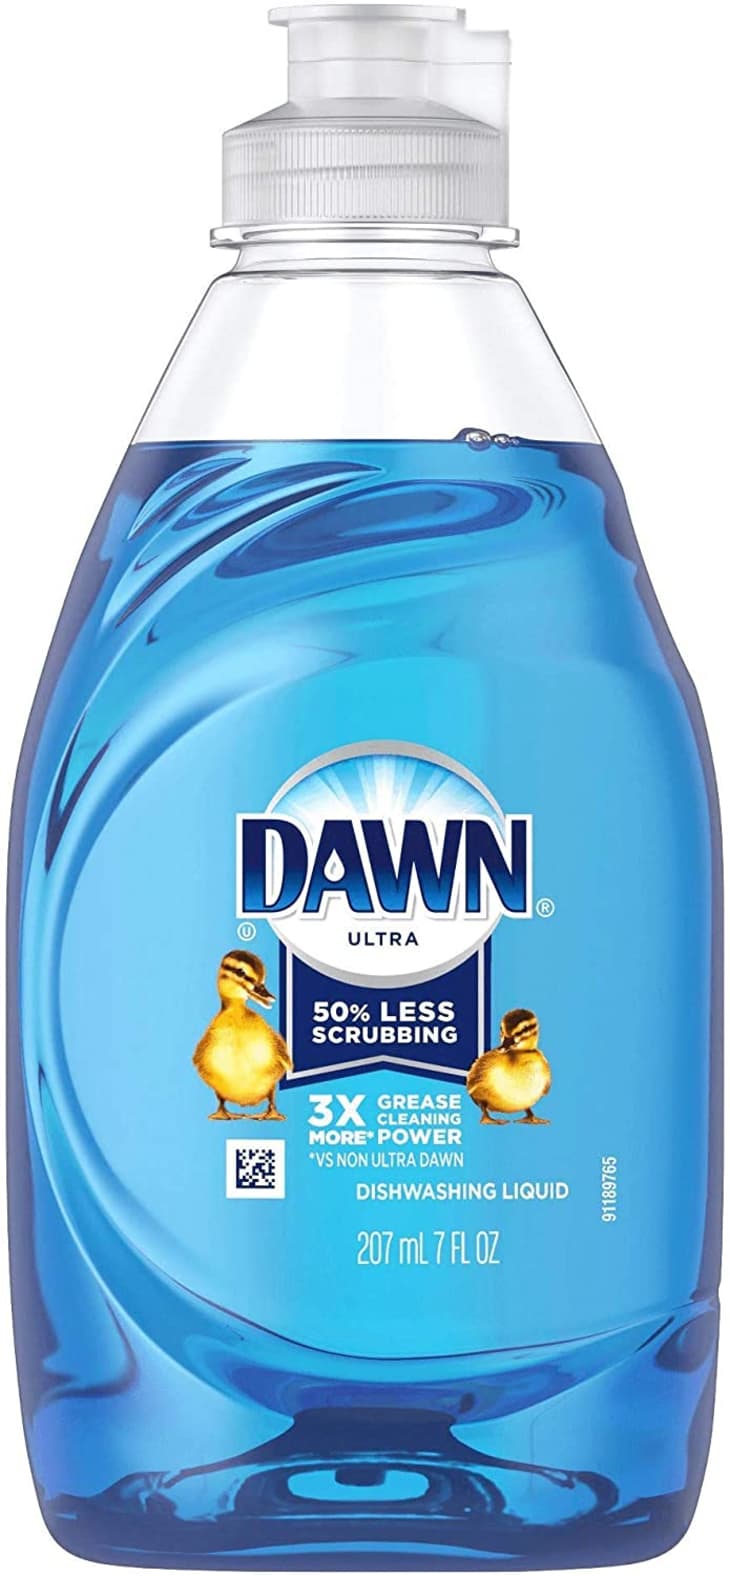 Dawn Dish Soap (3-Pack) at Amazon